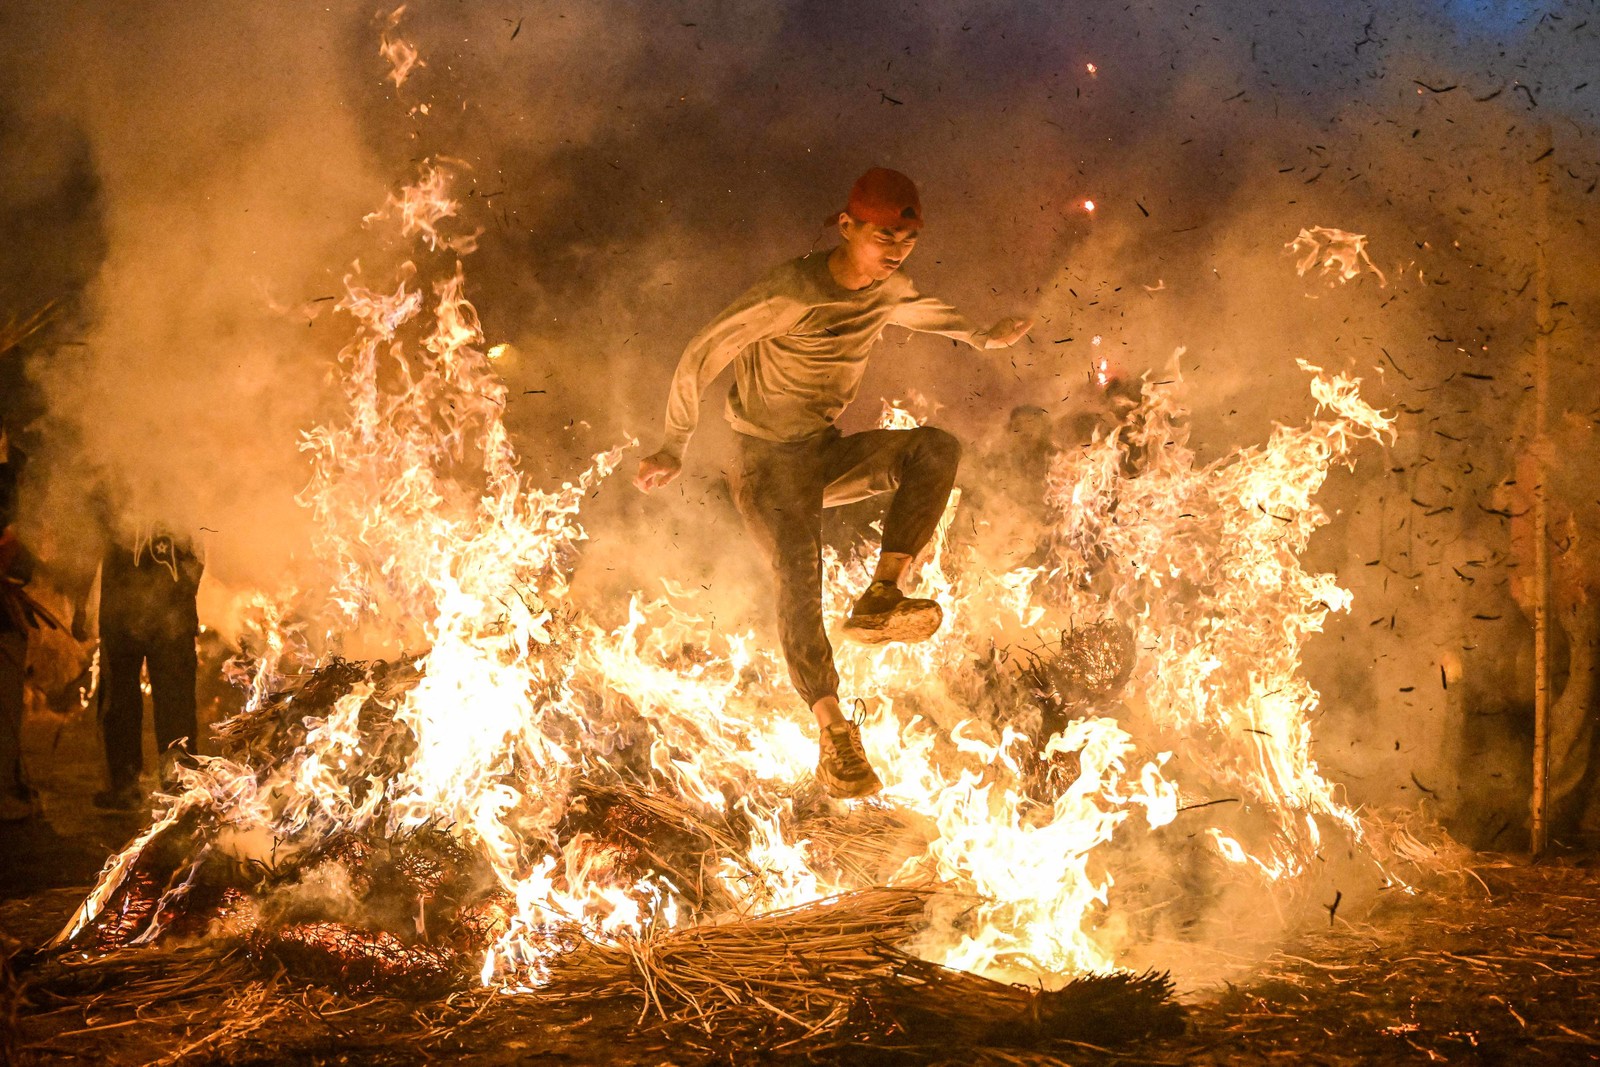 Homem pula fogueira para se livrar da má sorte em Jieyang, na província de Guangdong, no sul da China — Foto: AFP